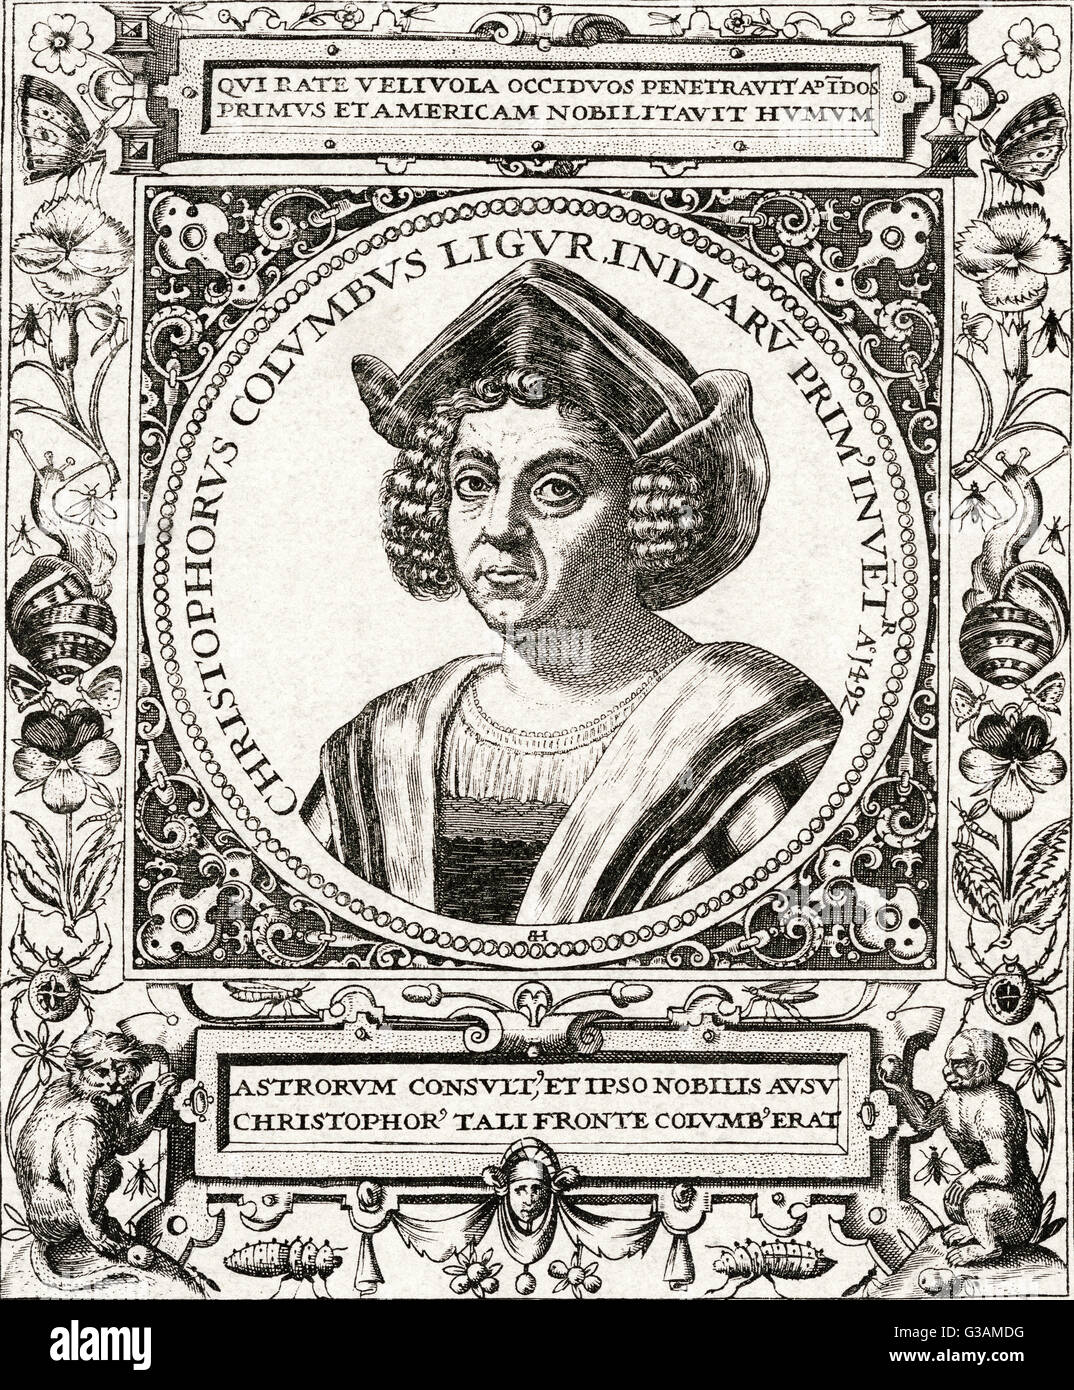 Christopher Columbus (1446-1506) - italienische Entdecker, Seefahrer und Kolonisator.     Datum: 1446-1506 Stockfoto